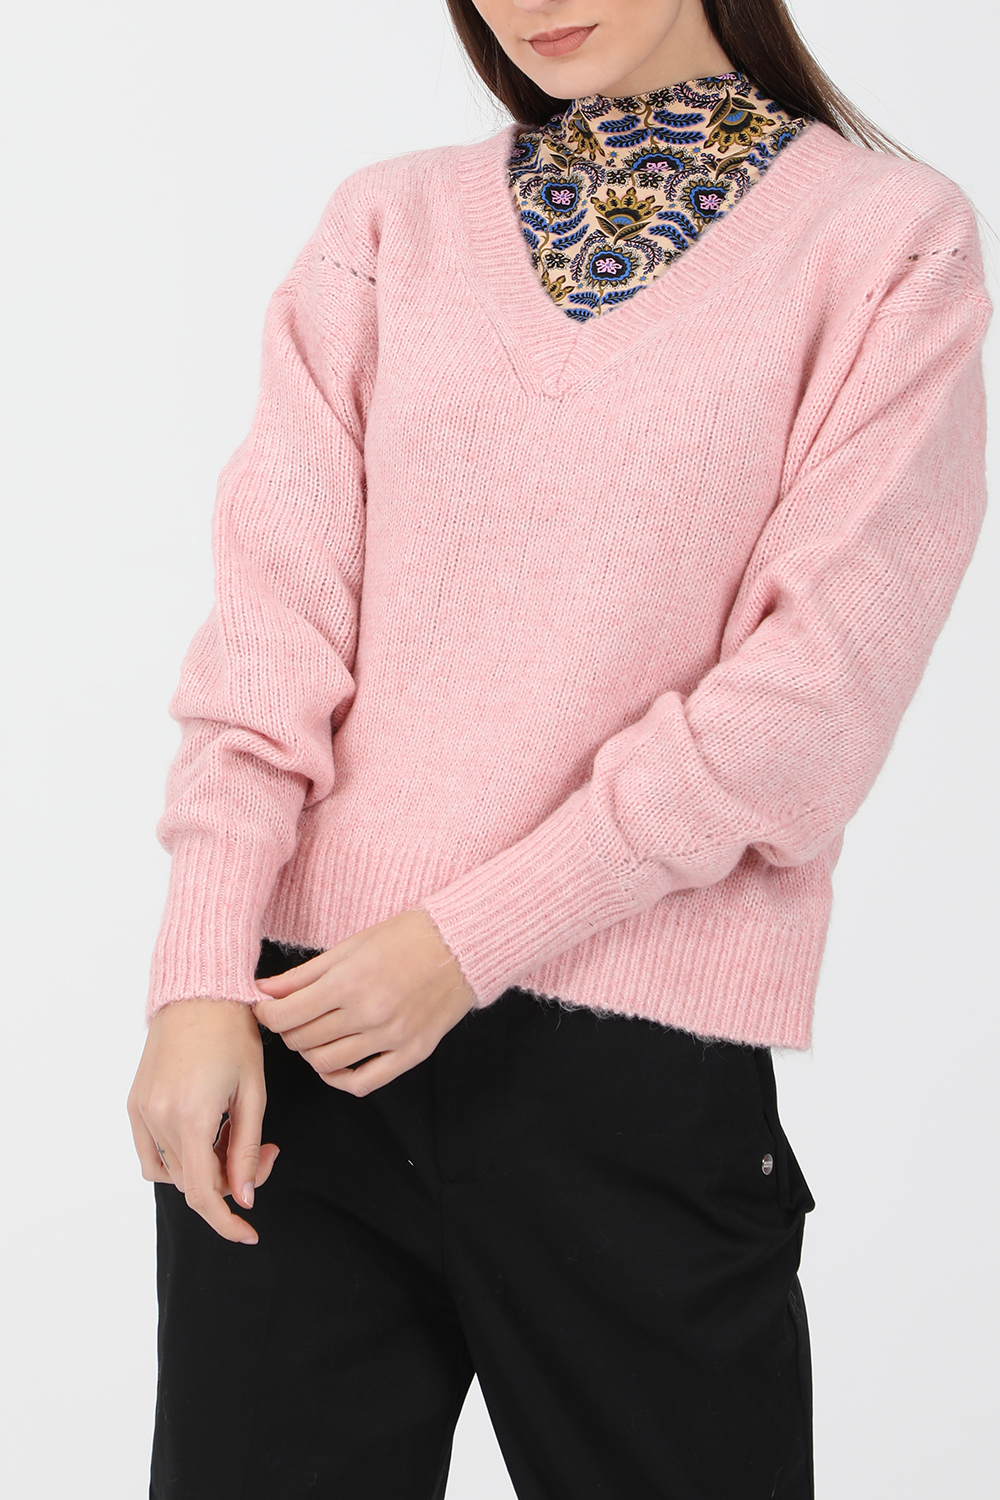 Γυναικεία/Ρούχα/Πλεκτά-Ζακέτες/Πουλόβερ SCOTCH & SODA - Γυναικείο πουλόβερ SCOTCH & SODA Fuzzy knit pull with v-neck ροζ